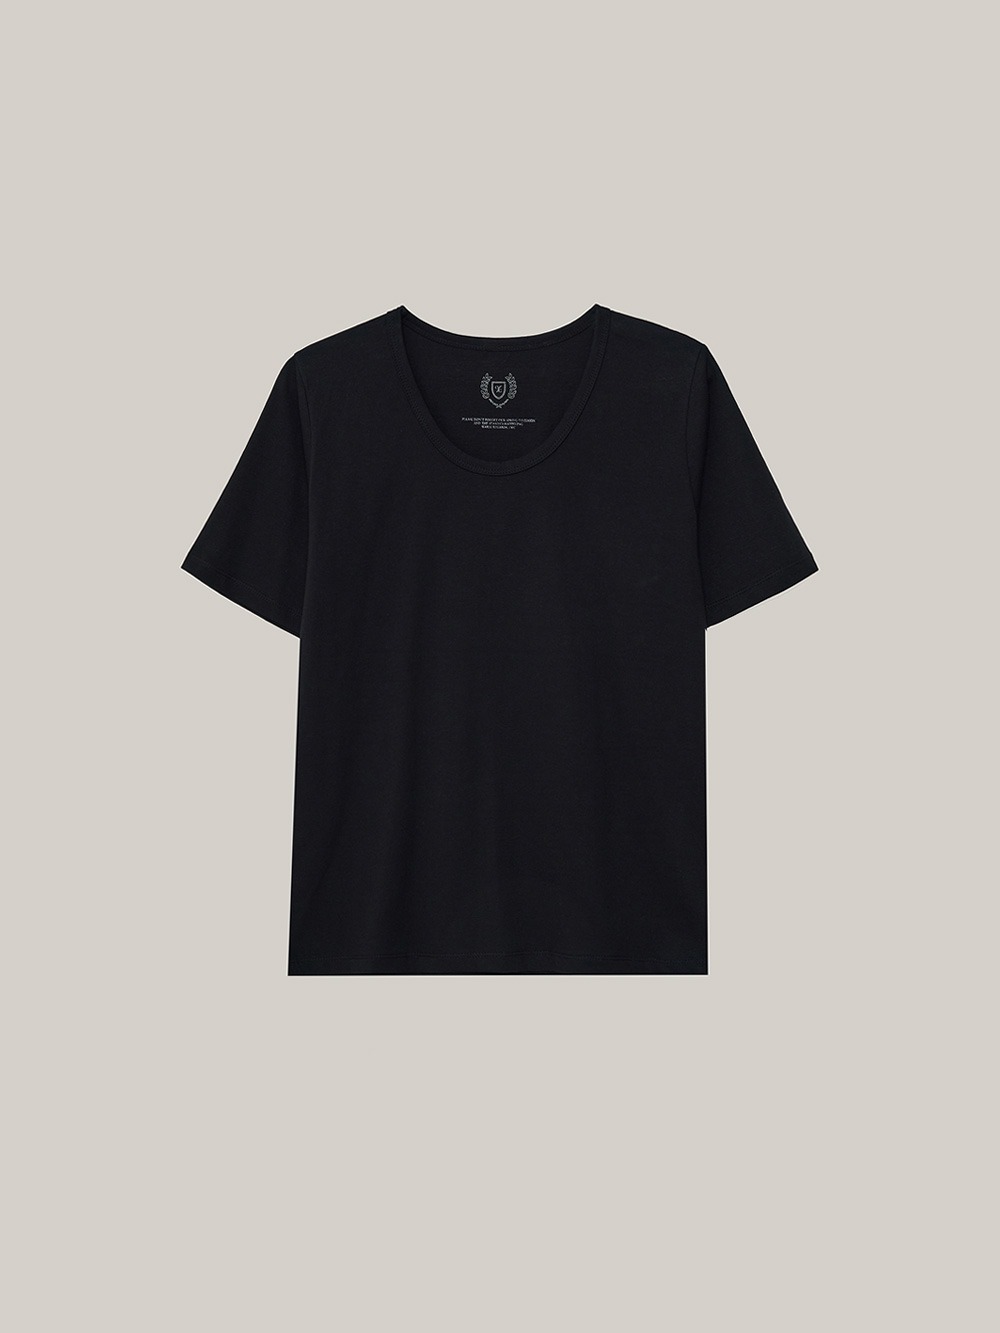 Egg T-shirt (black)